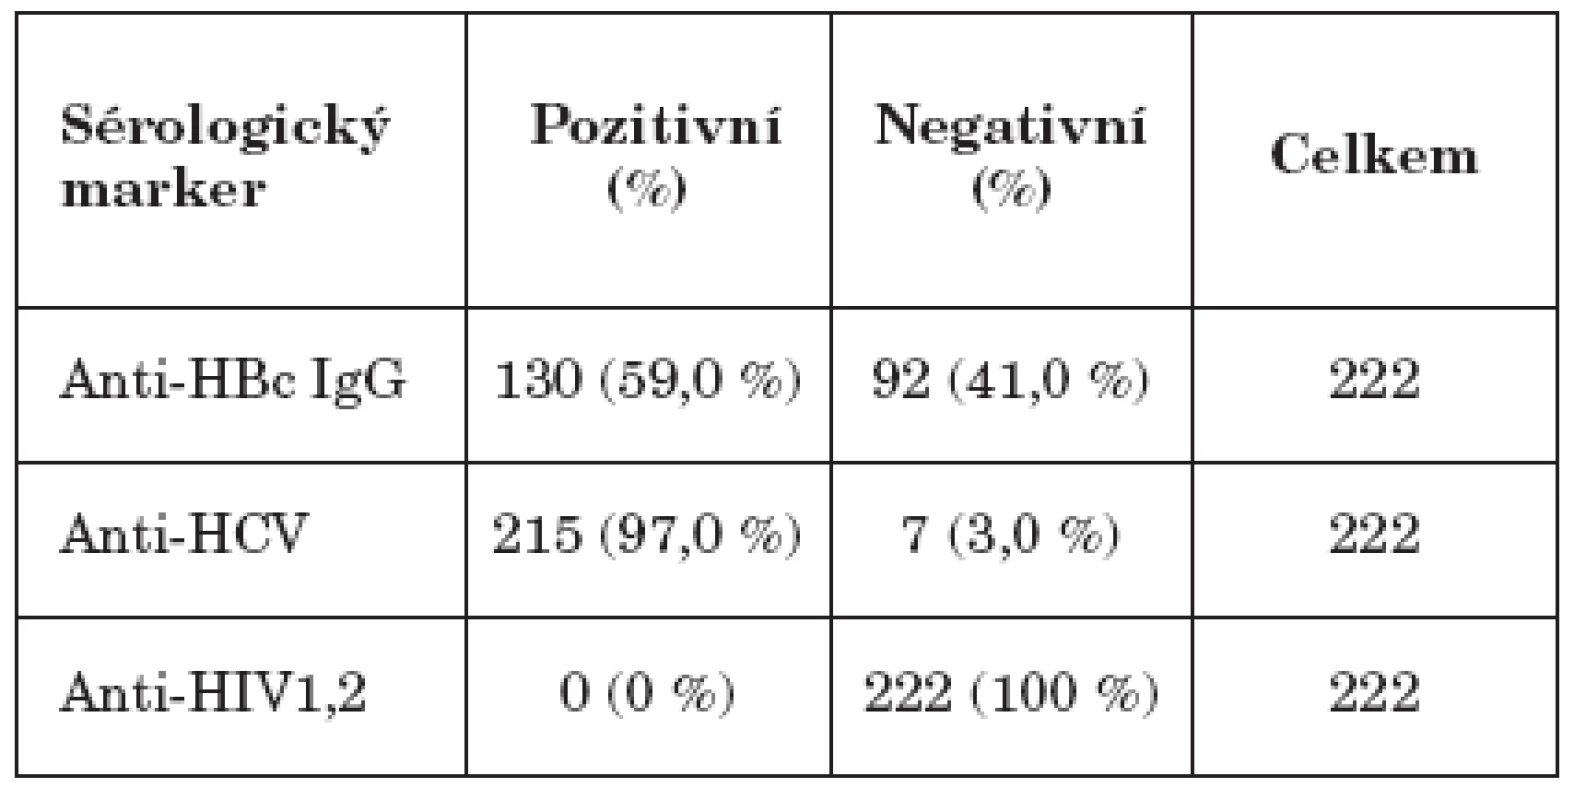 Sérologické nálezy hepatitid B, C a HIV
Table 1. HBV, HCV and HIV seropositivity